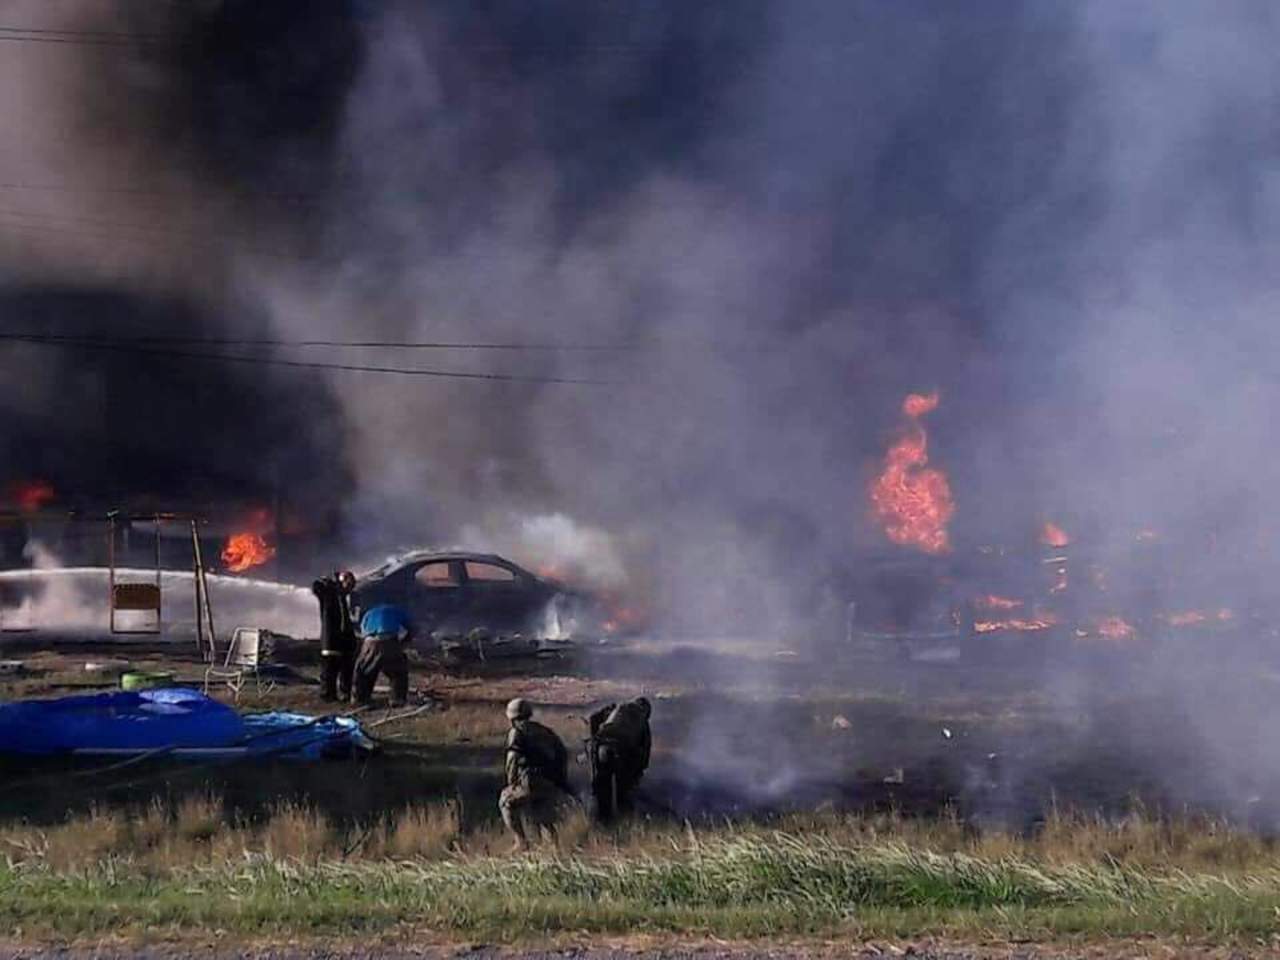 La explosión dejó al menos 10 casas quemadas y más de 16 vehículos calcinados, según informó Protección Civil del estado. (TWITTER)